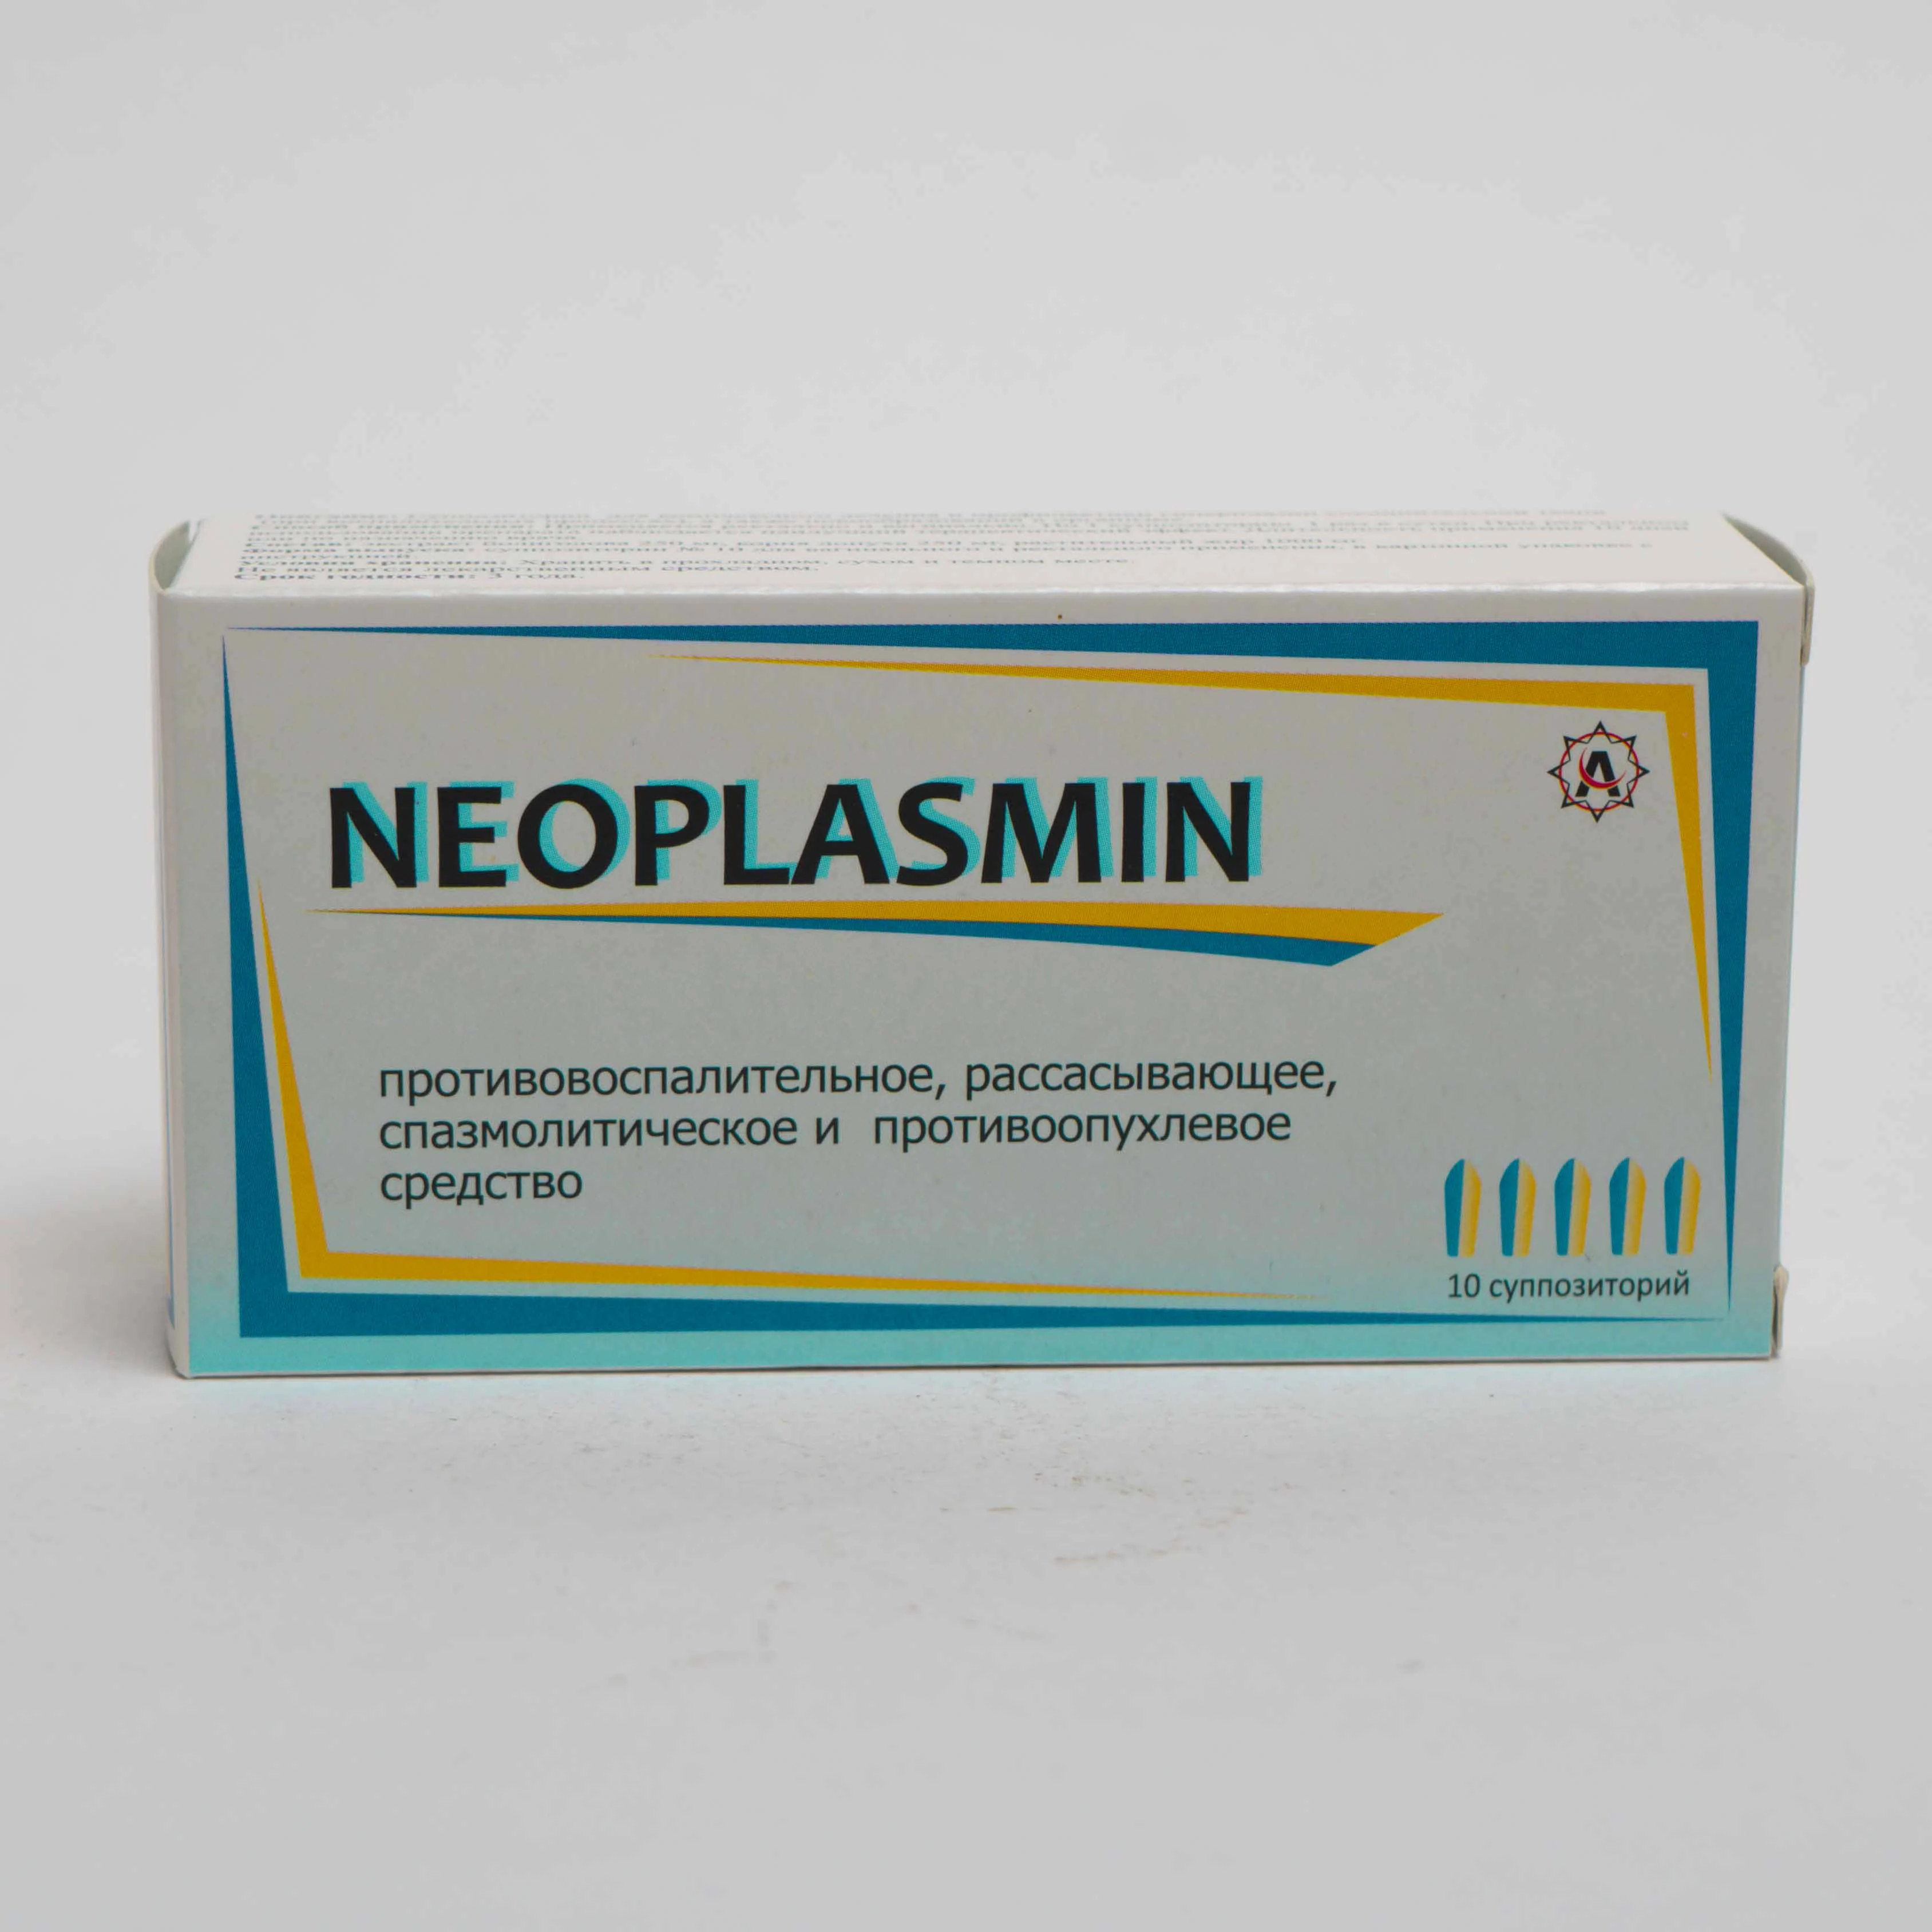 Neoplasmin No. 10 (Vaginal suppositories)  (Ukraine)